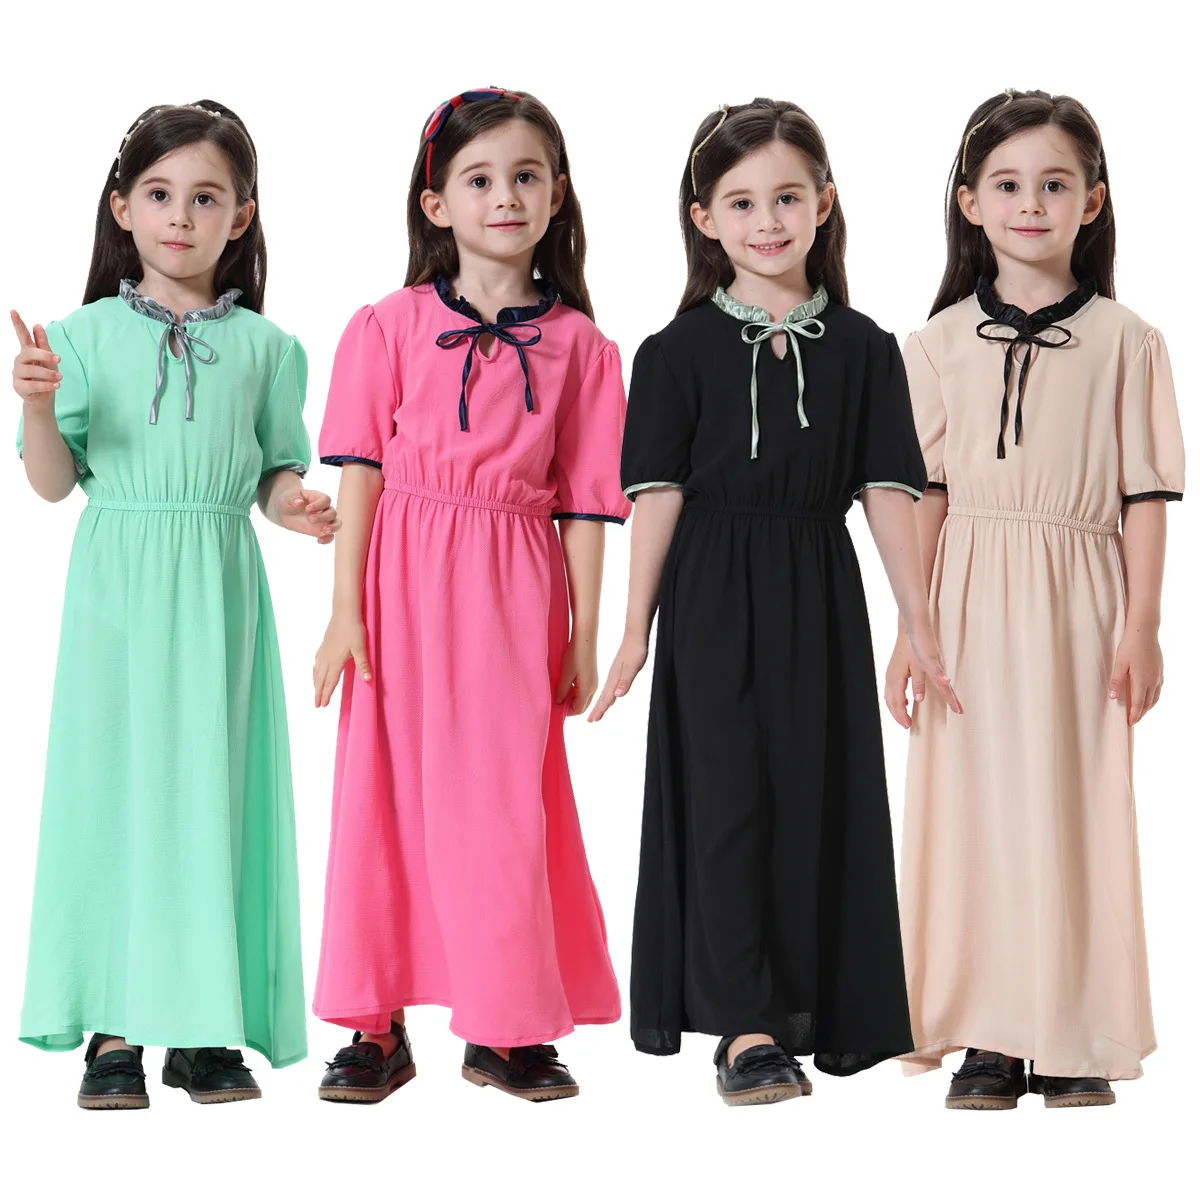 Мусульманская одежда для детей; Мусульманское платье для девочек; Abaya; Мусульманское платье для девочек; Детская одежда в арабском и мусульм...